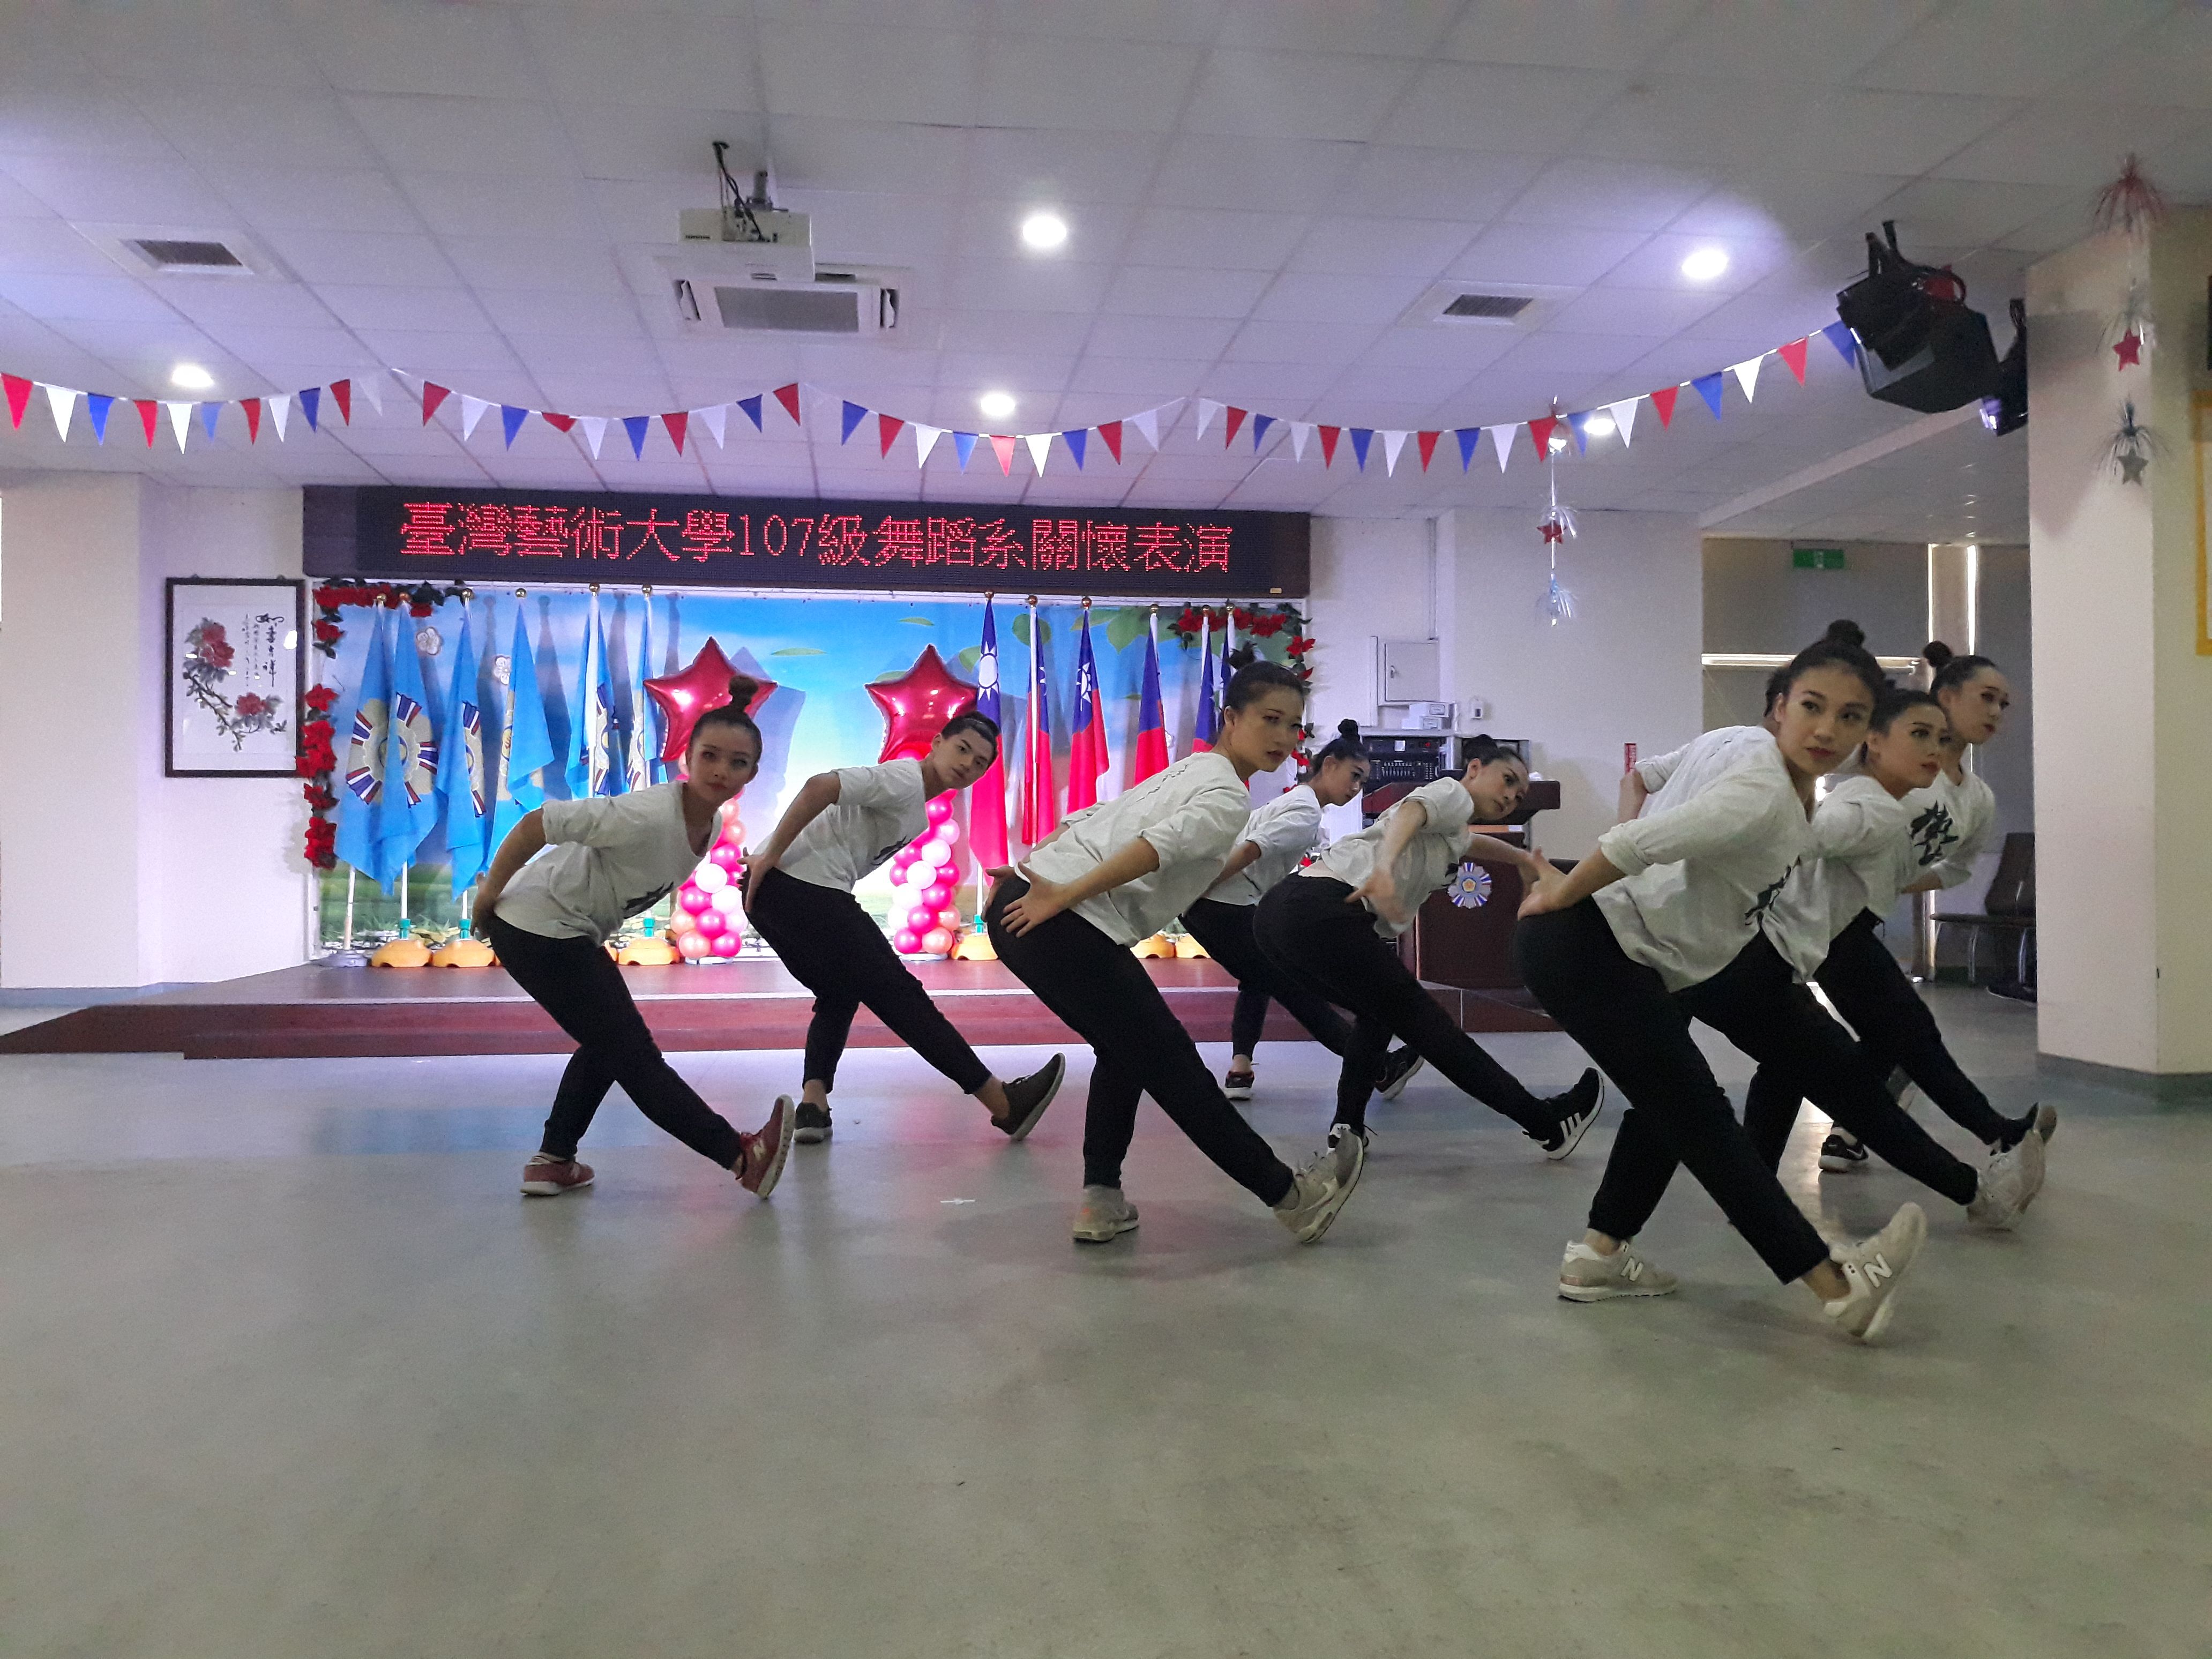 臺灣藝術大學107級舞蹈系服務學習表演9